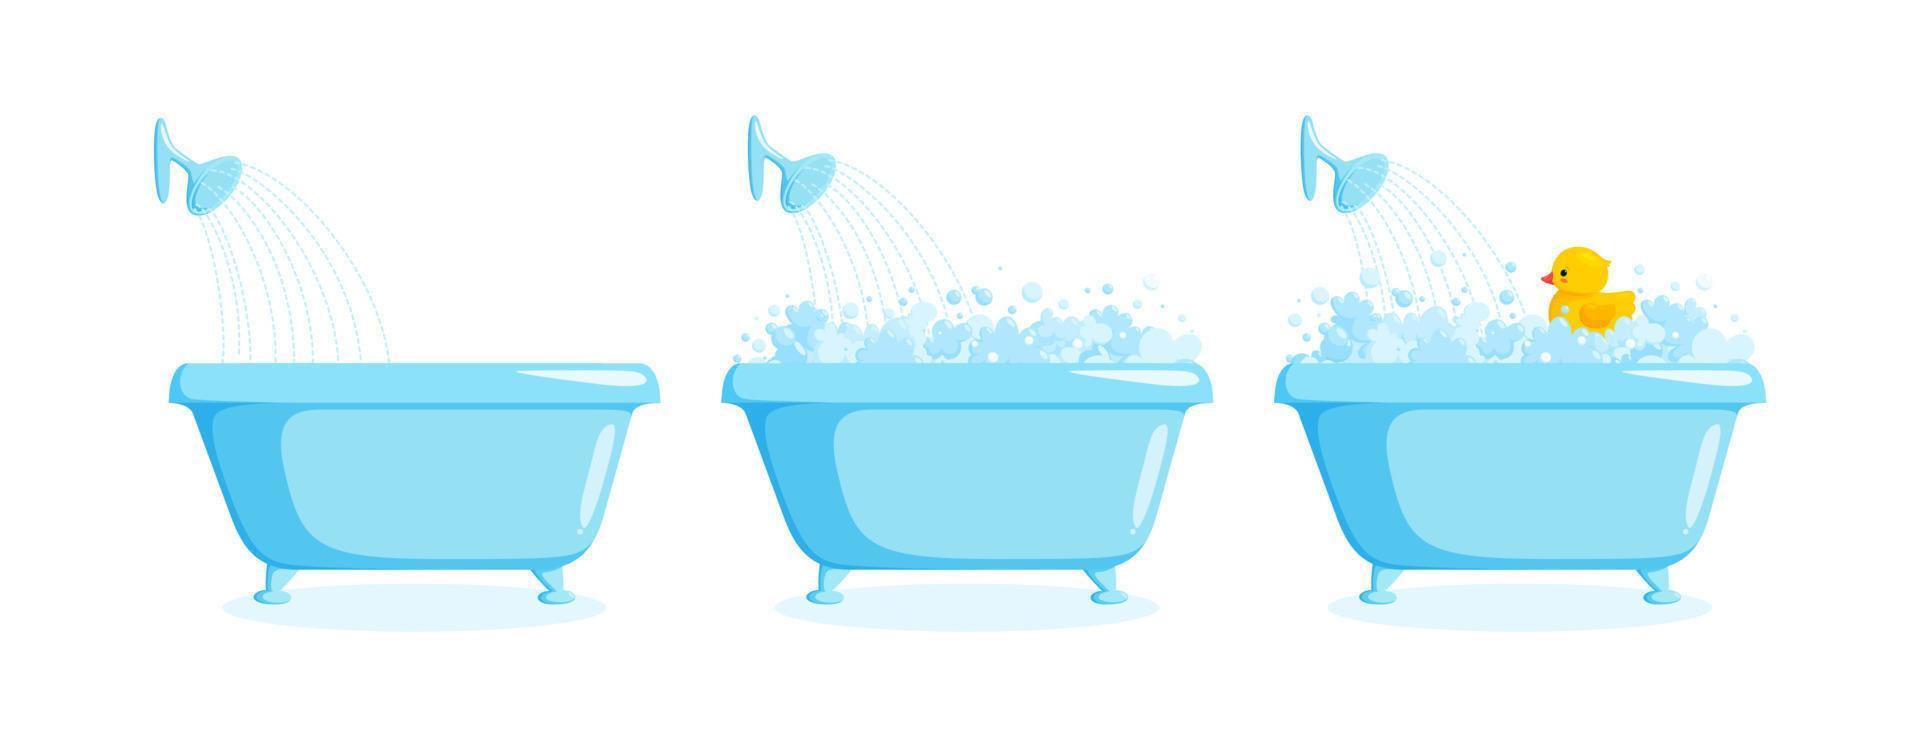 Bañera con pato de goma con espuma y ducha. juego de bañera con pato amarillo en burbujas y espuma. ilustración vectorial vector